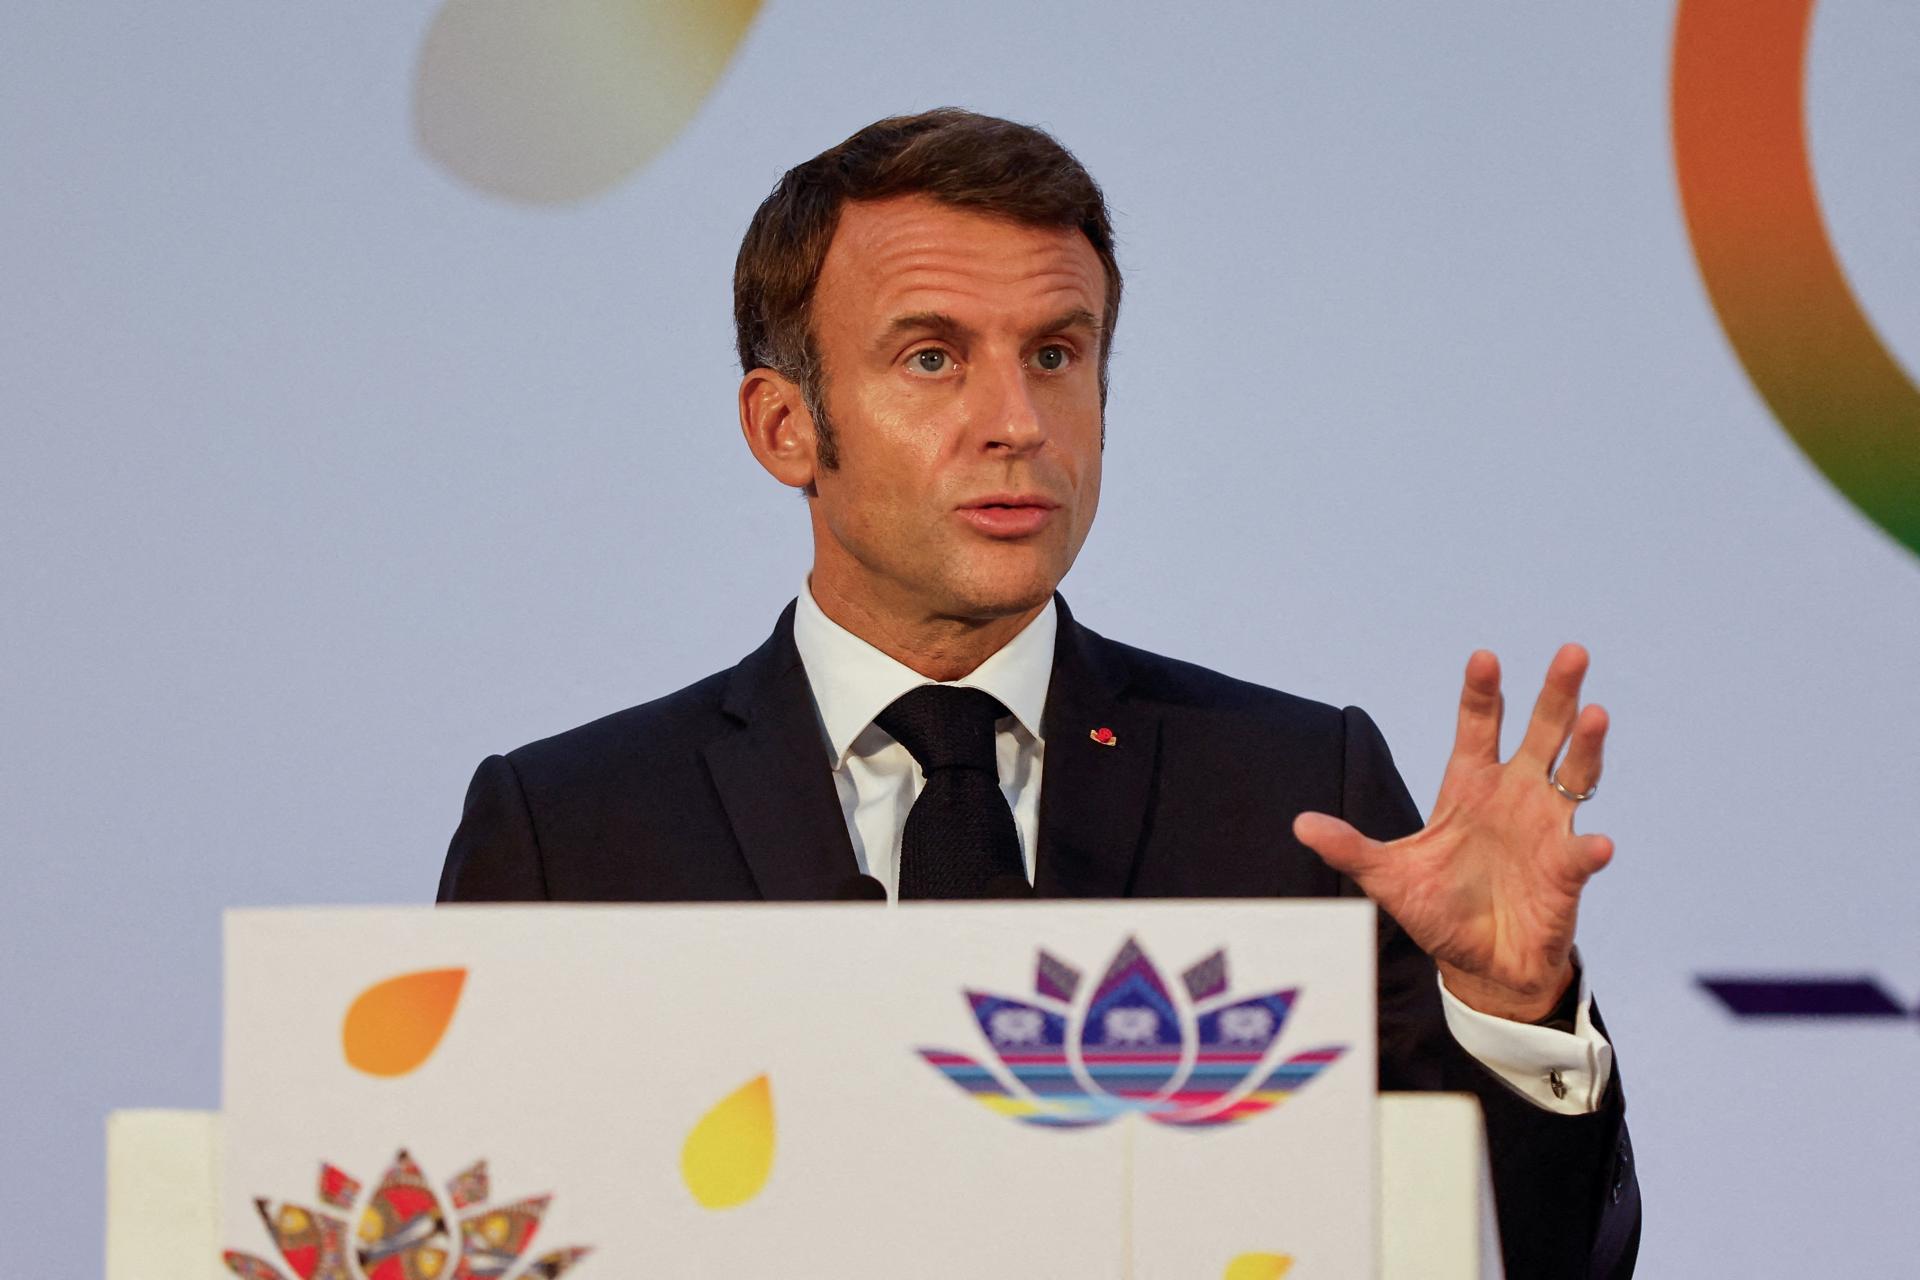 Francúzsky veľvyslanec v Nigeri je na ambasáde držaný ako rukojemník, povedal Macron